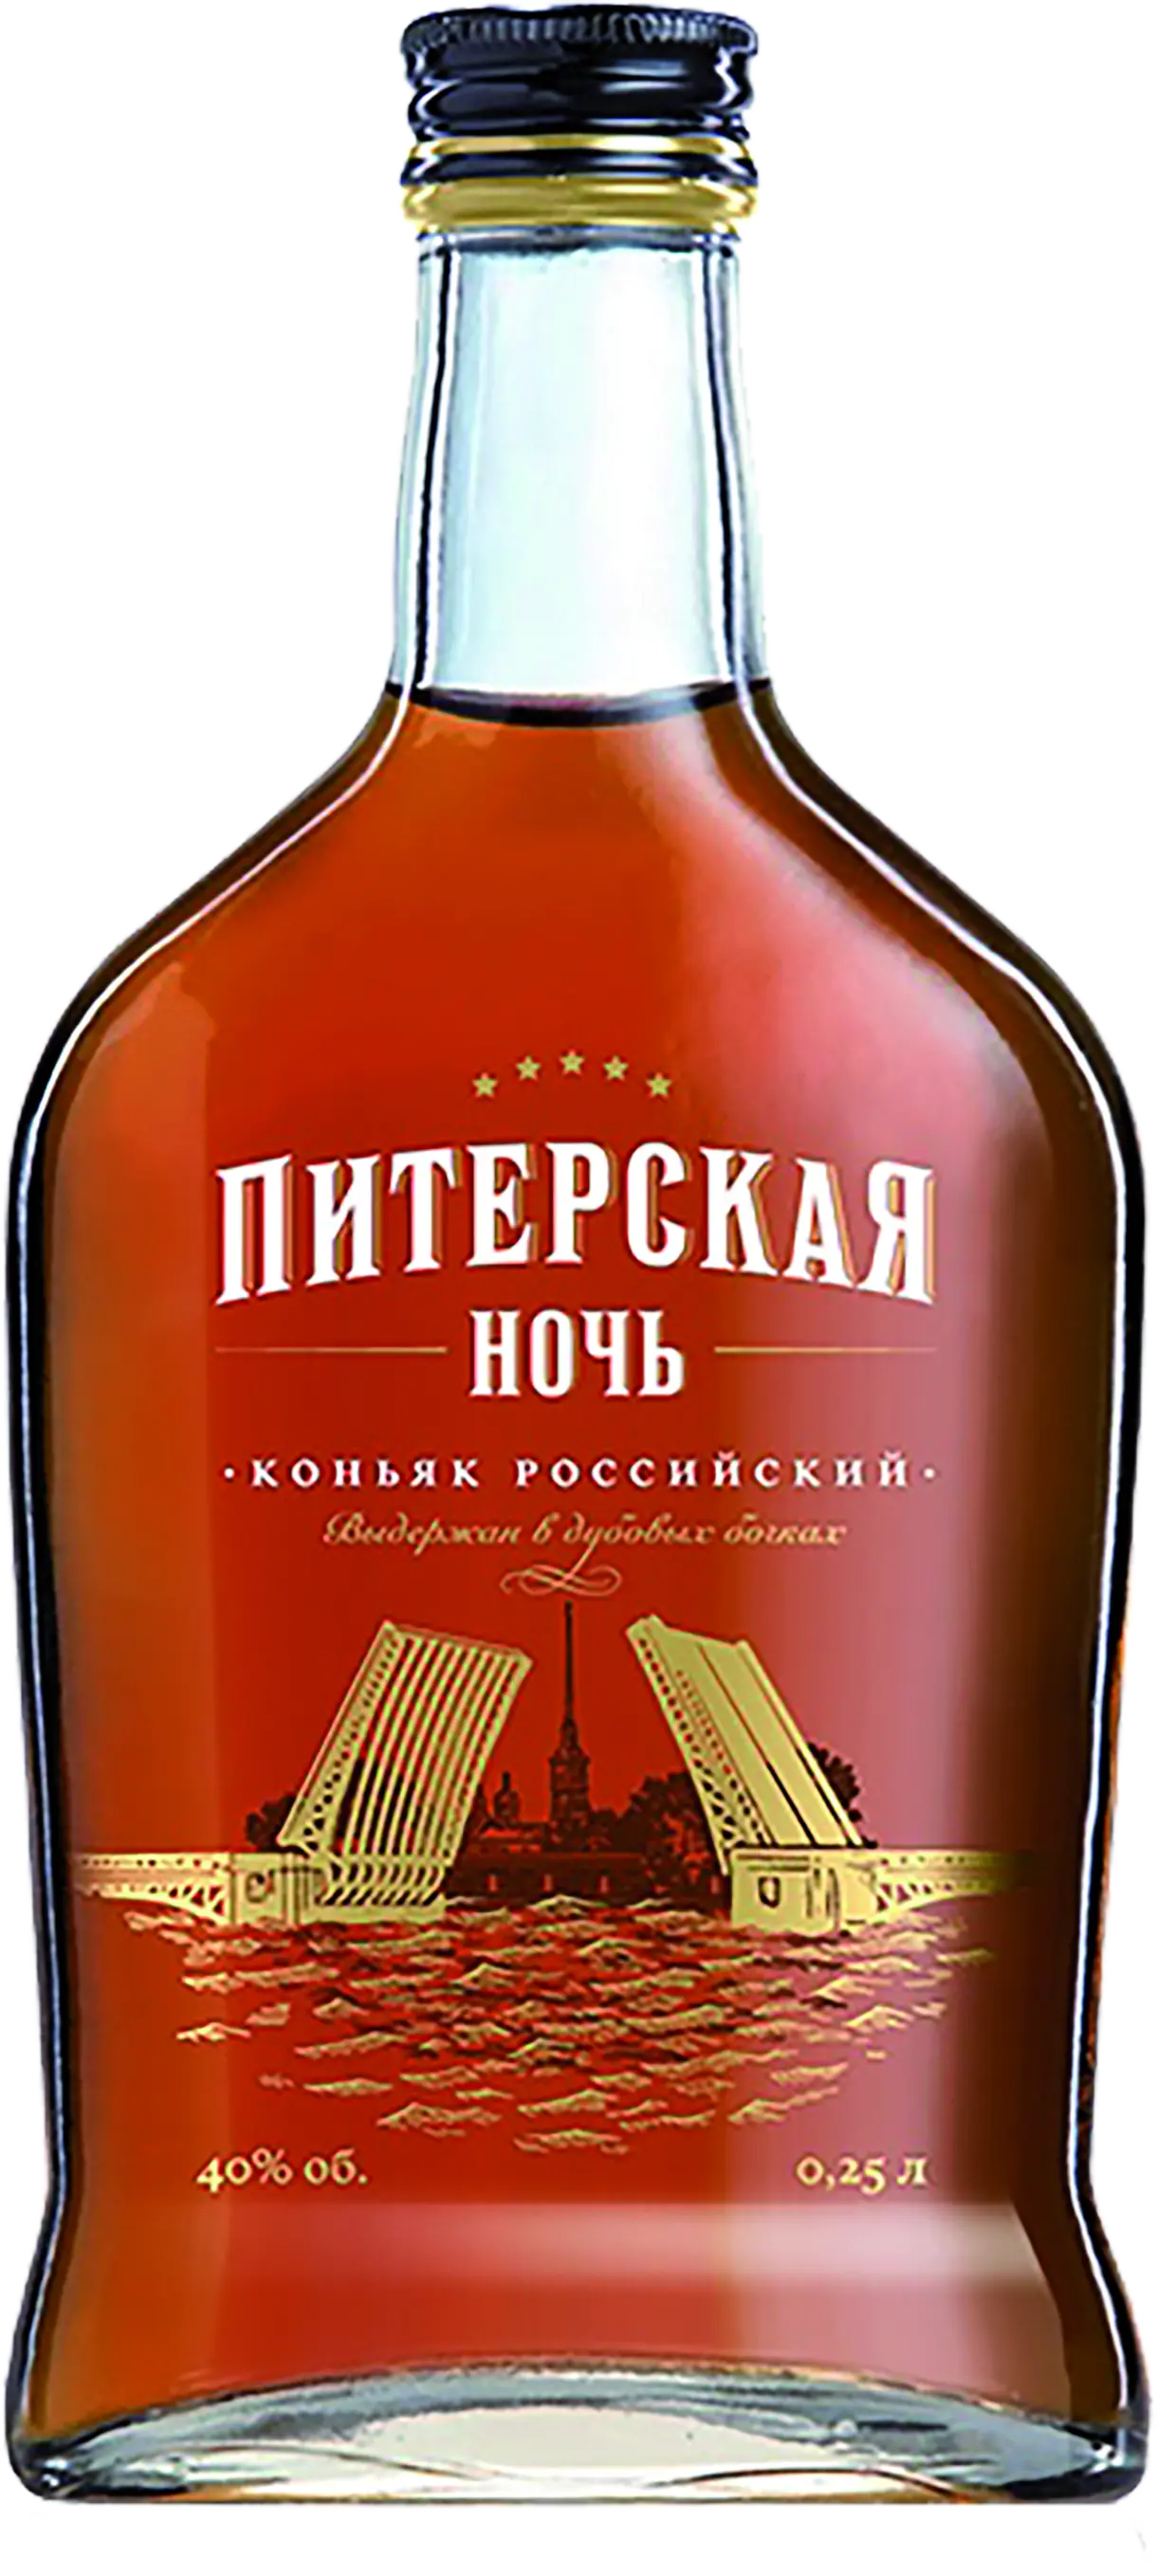 Питерская Ночь 5 лет (Petersburg Night)